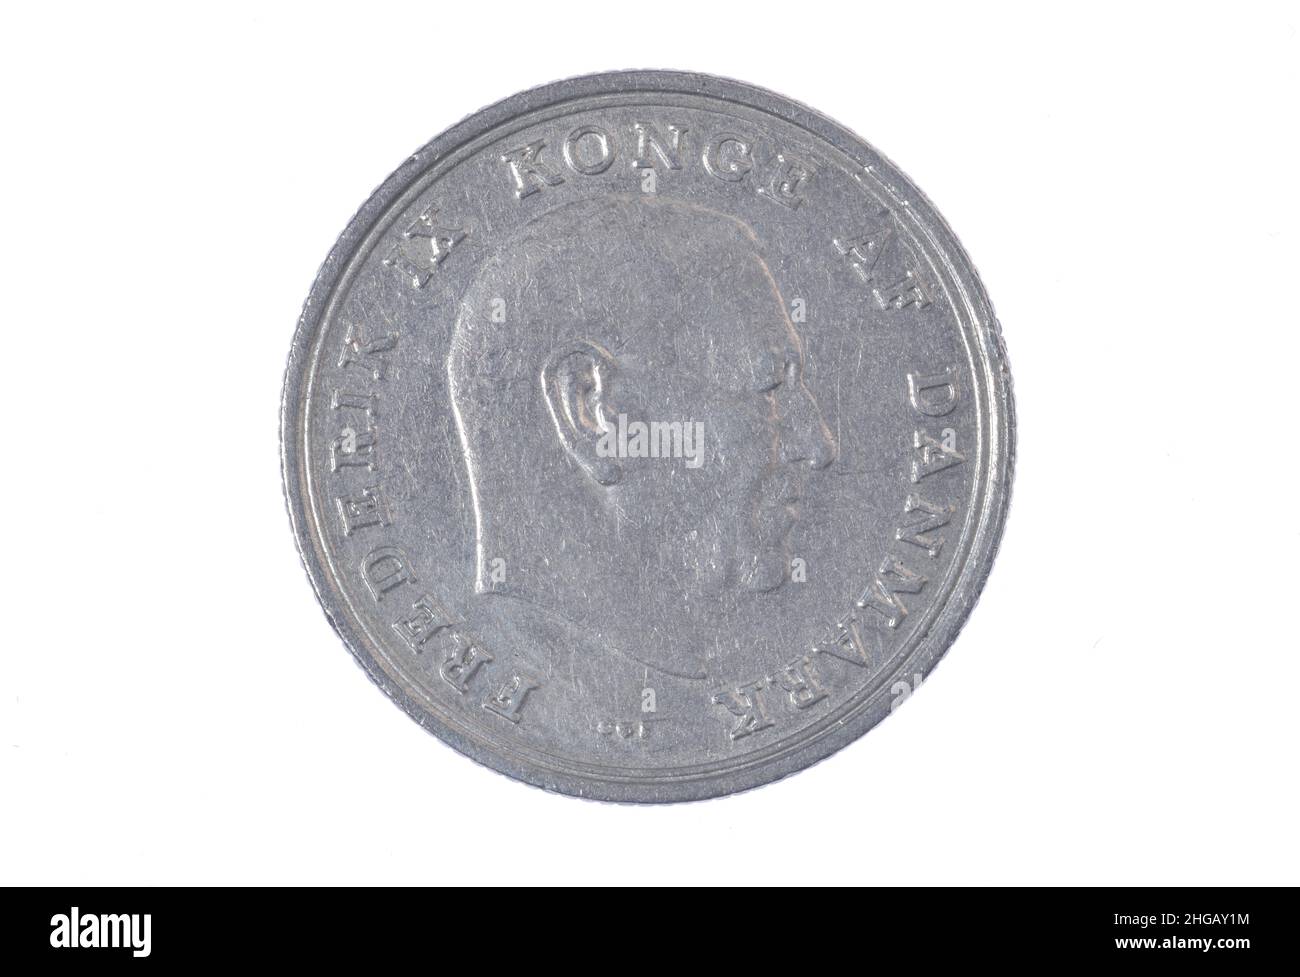 Coin, 1 krone, Denmark Stock Photo